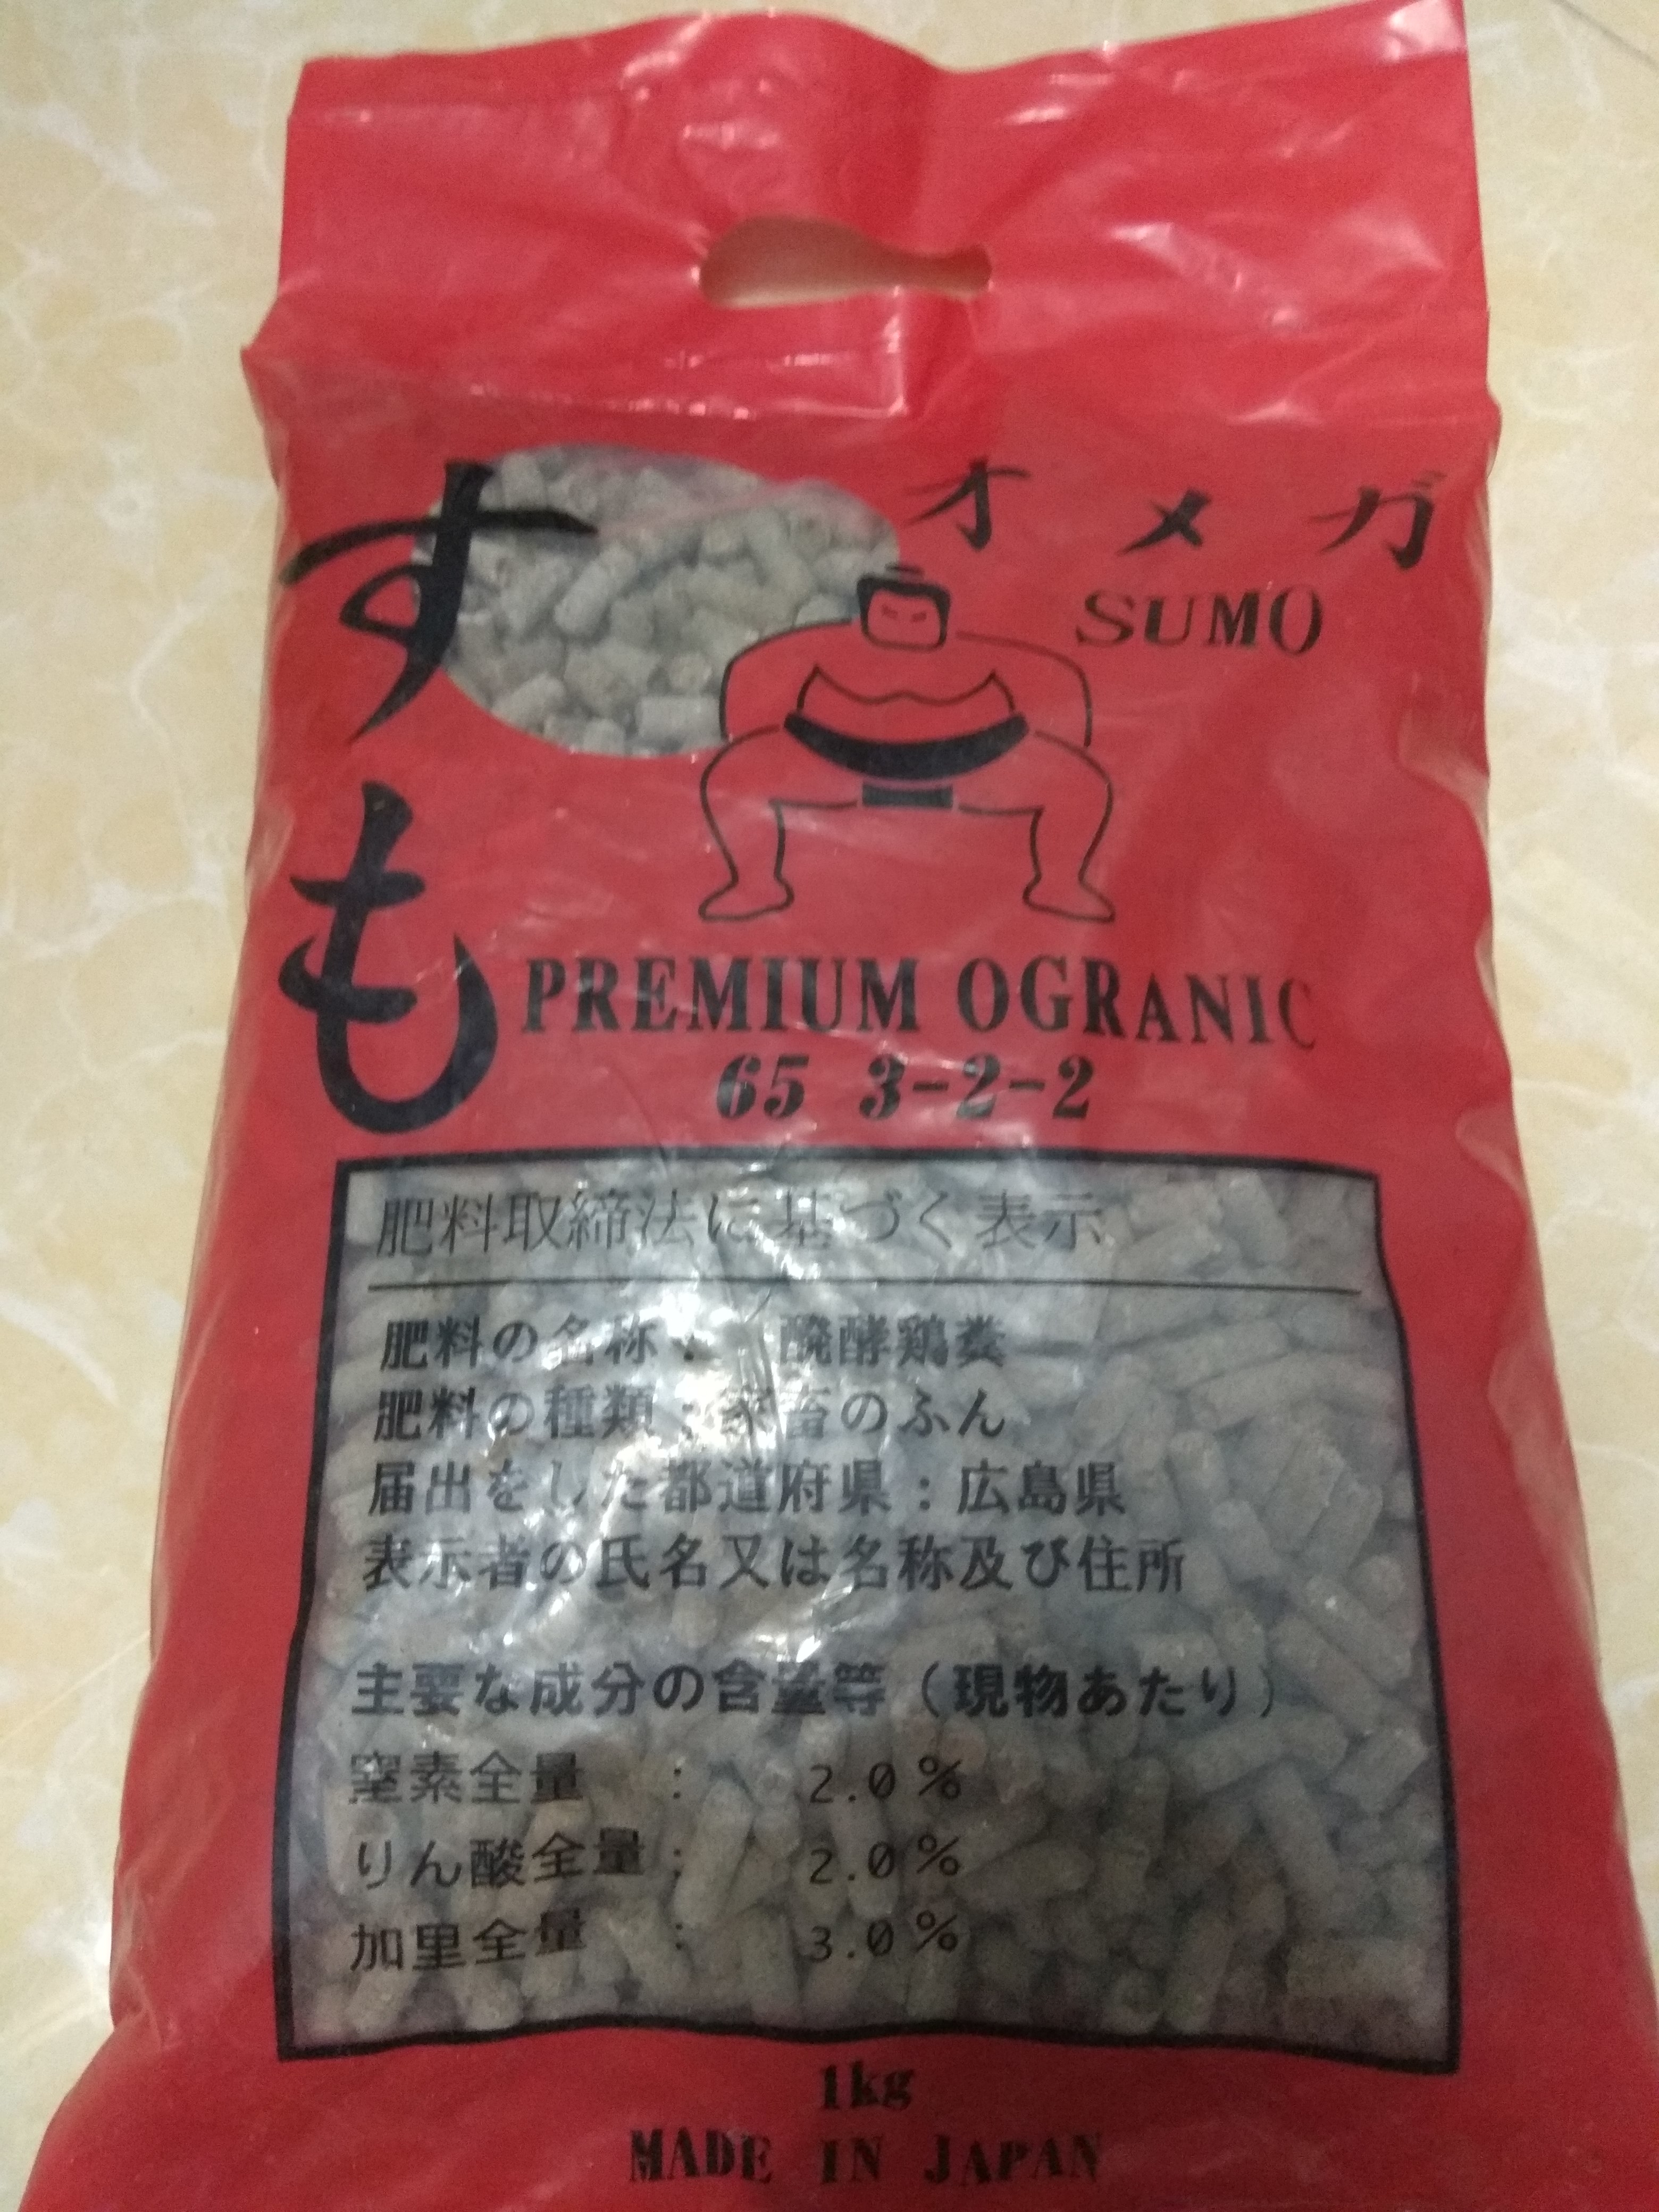 Phân bón hữu cơ  Premium  organic 65 3-2-2 - gói 1 kg